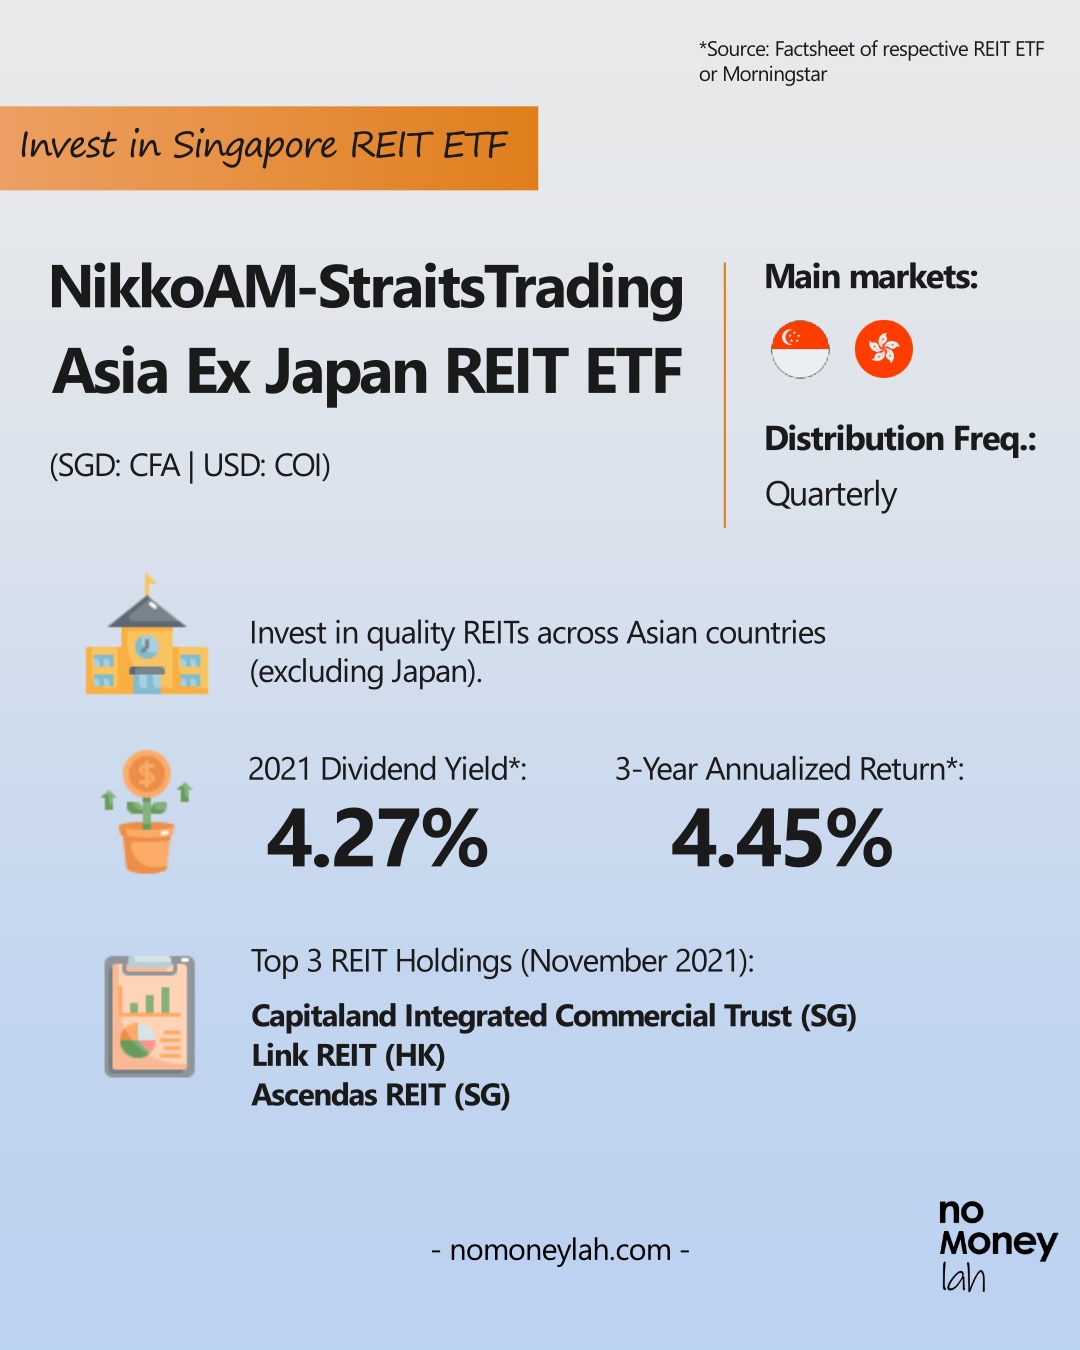 NikkoAM-StraitsTrading Asia Ex Japan REIT ETF